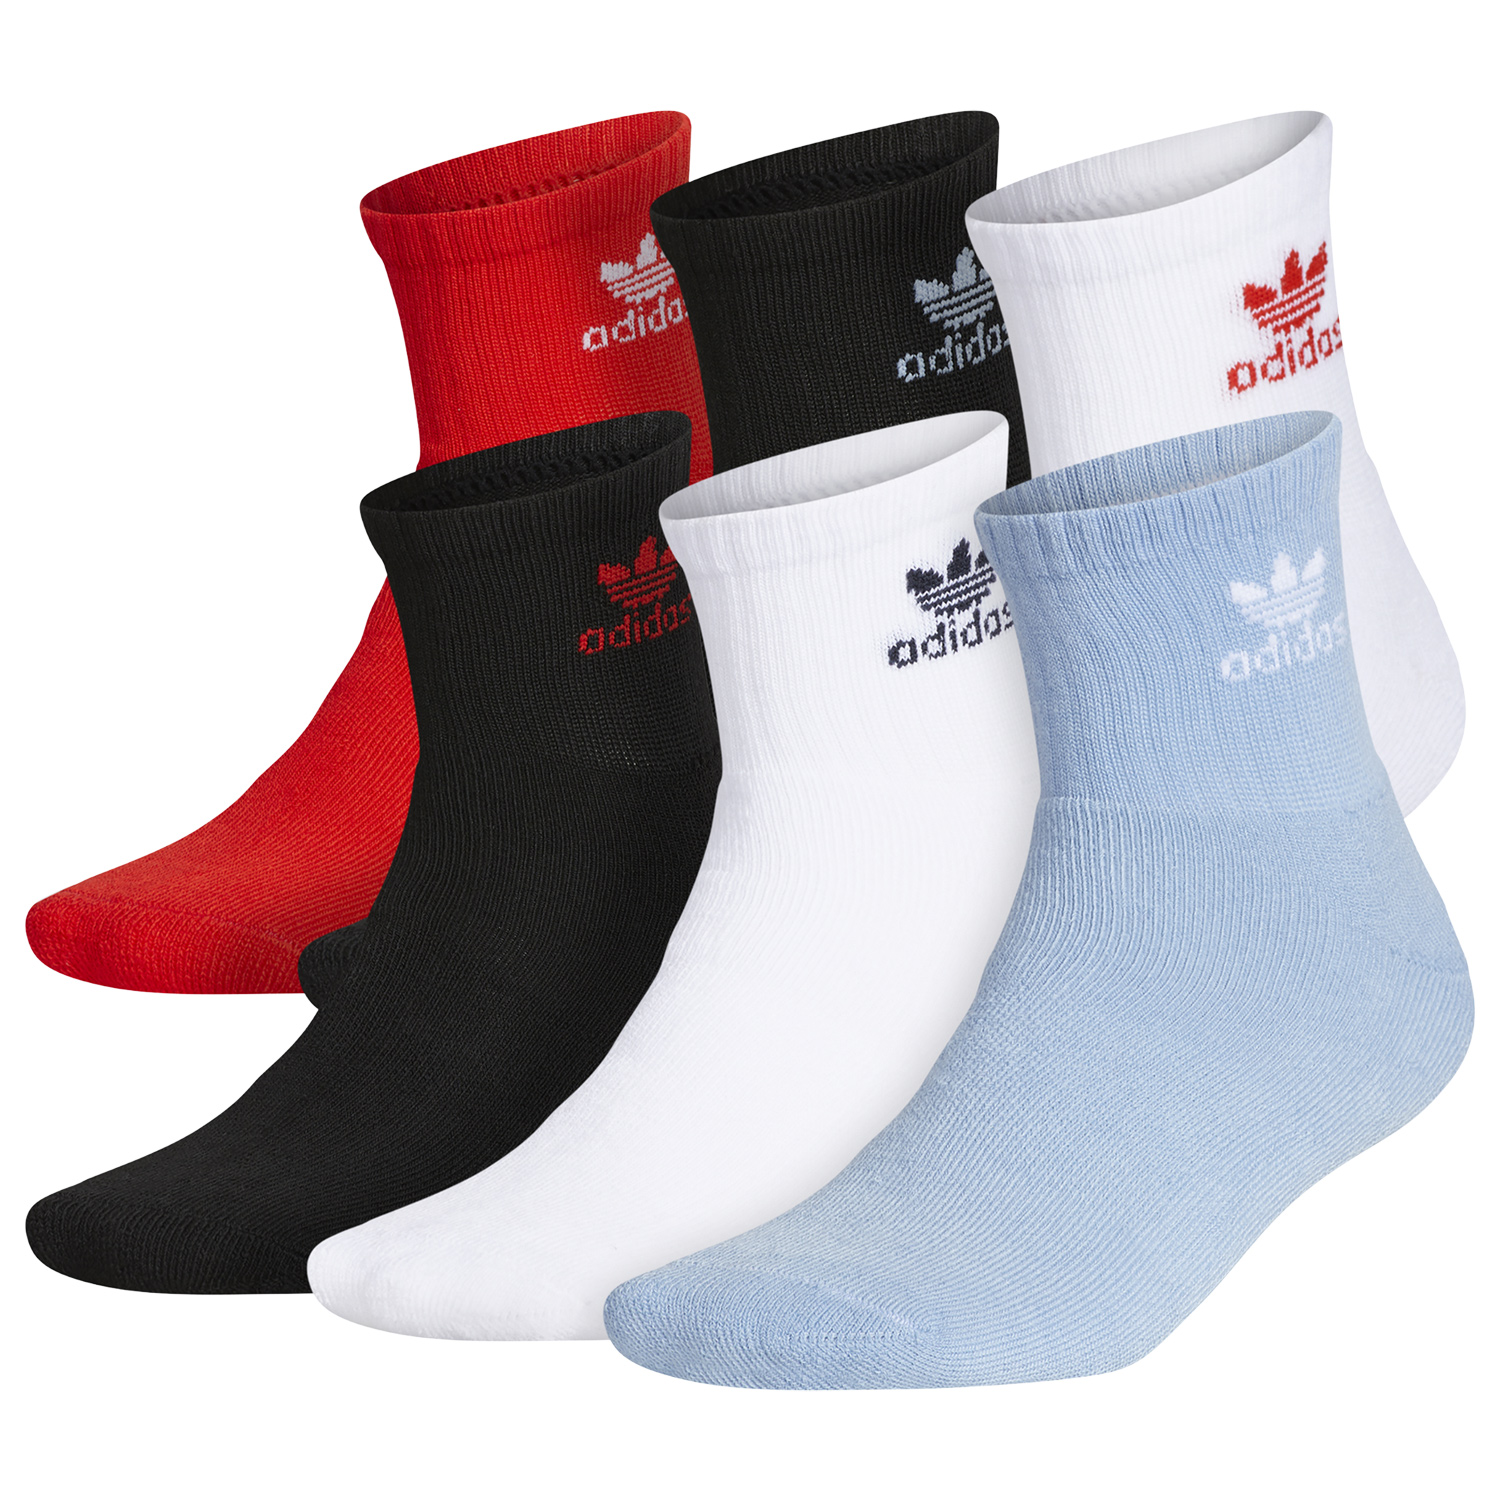 yeezy-350-v2-blue-tint-quarter-socks